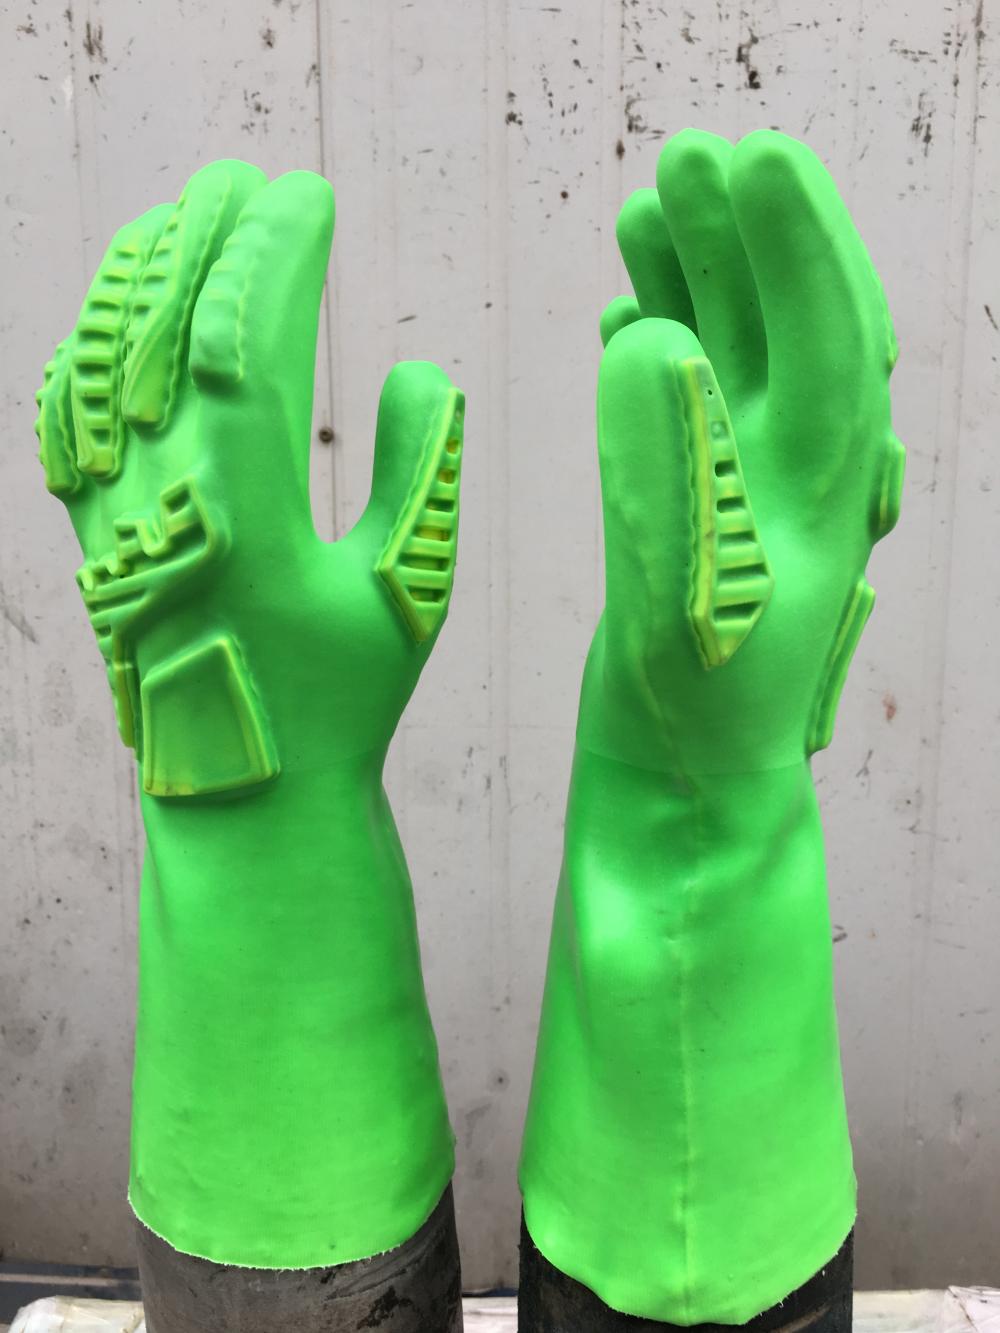 Πράσινα γάντια επιπτώσεων TPR με TPR στο χέρι πίσω